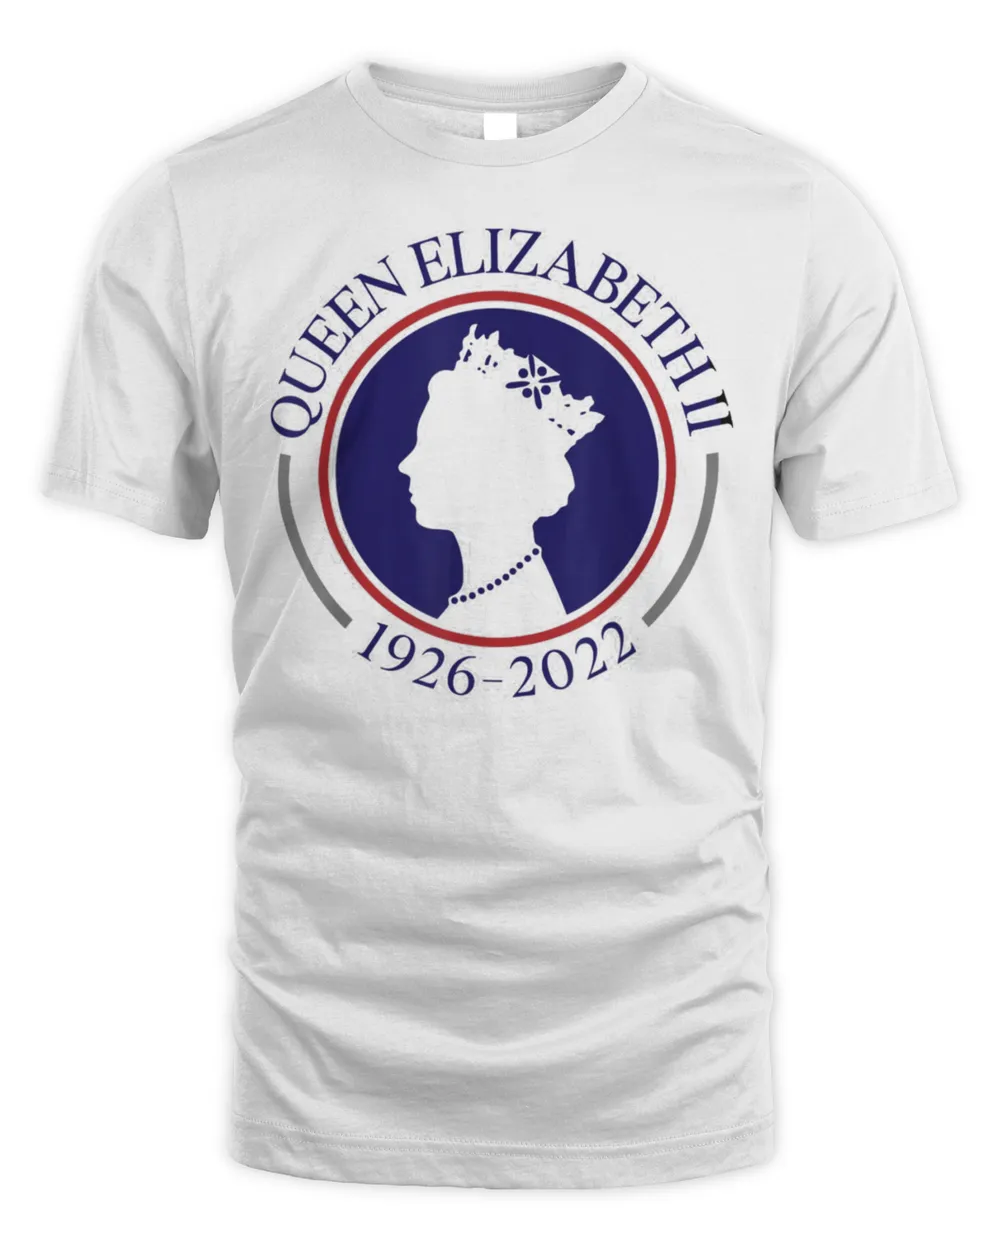 Queen Elizabeth II 1926-2022 Shirt